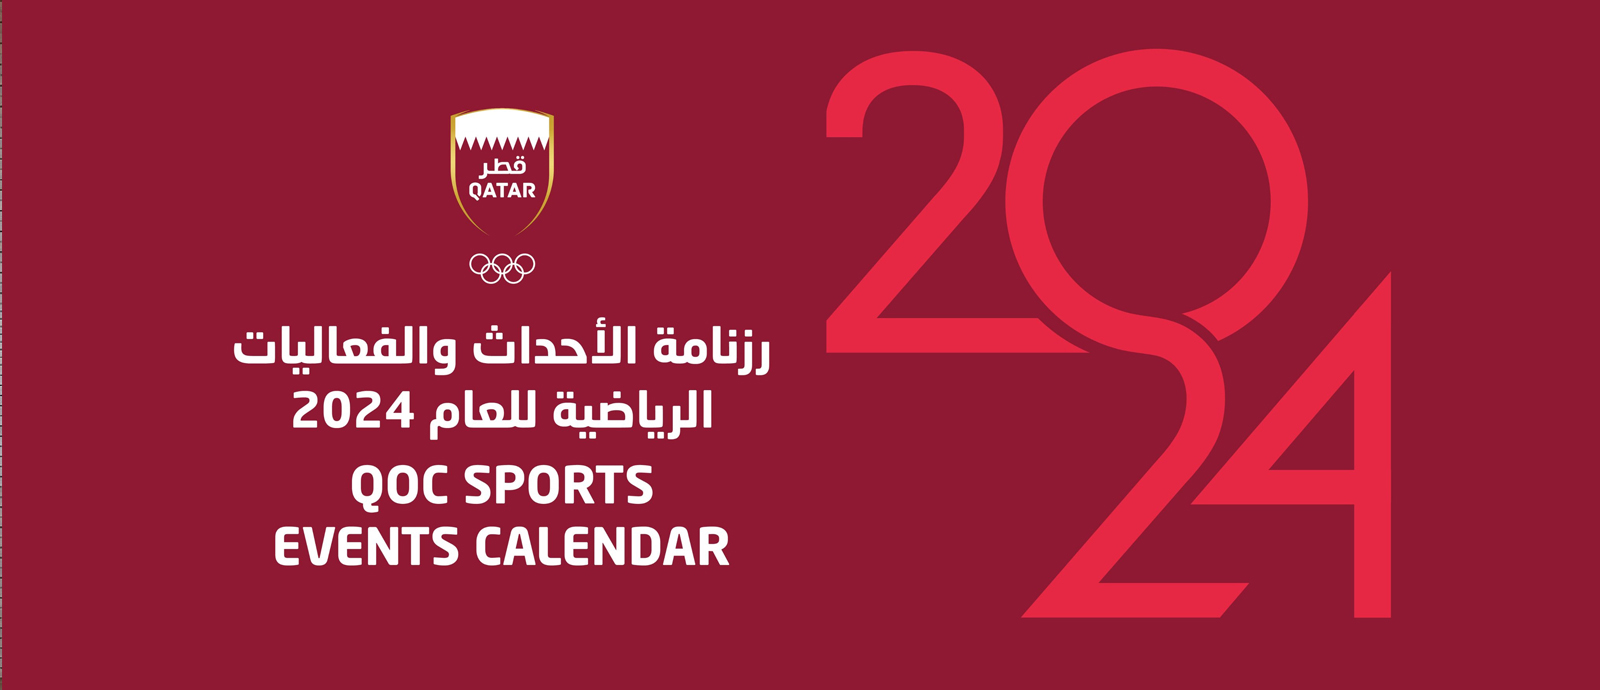  2024 Sport Events Calendar